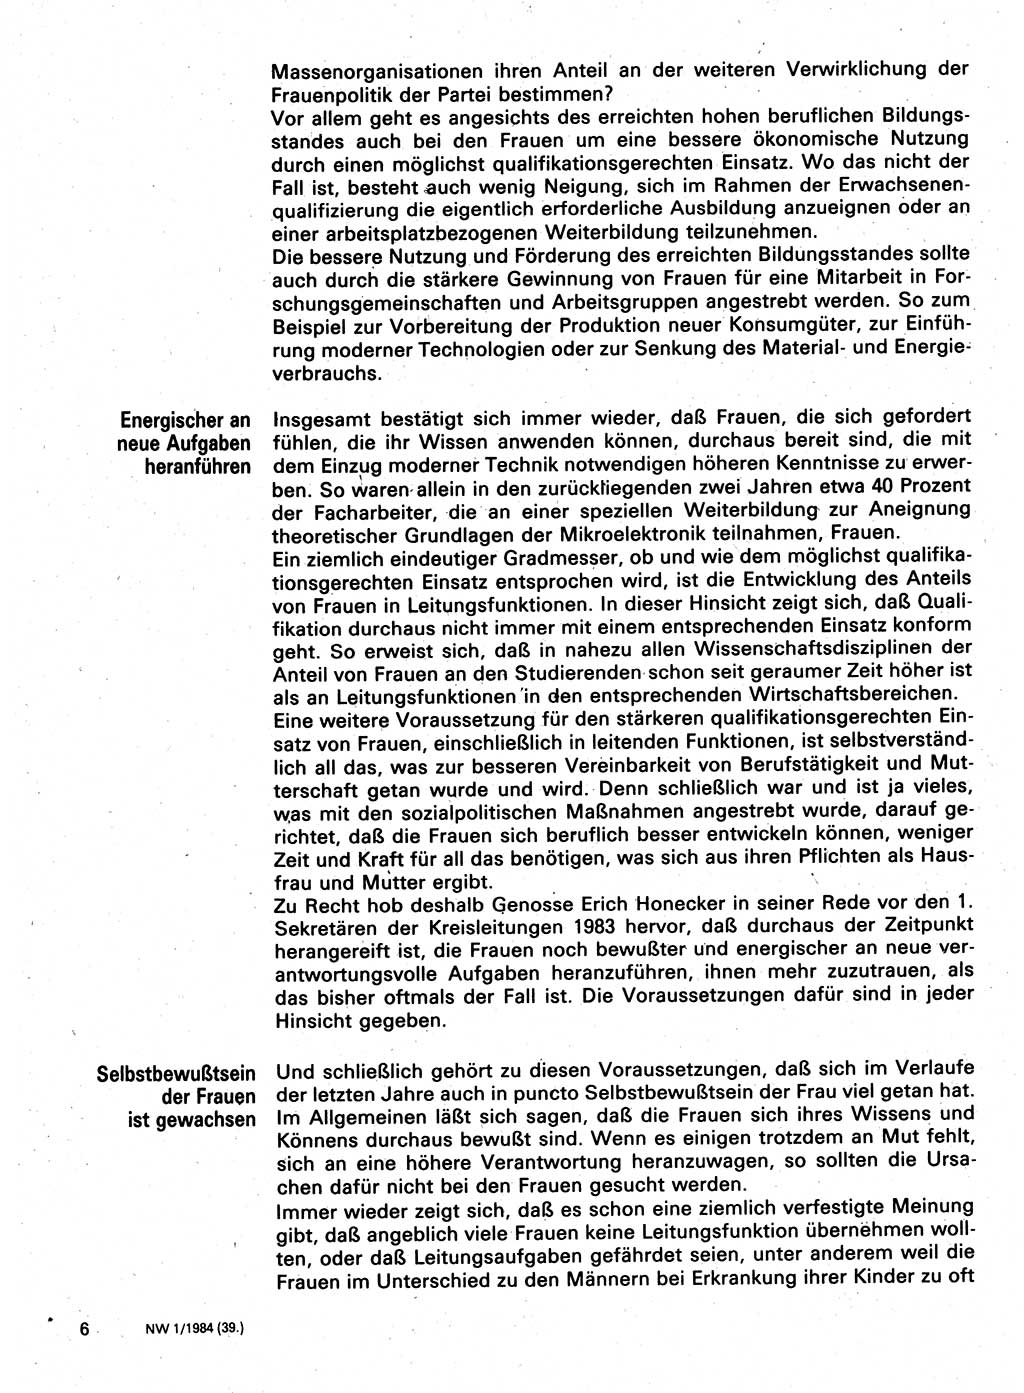 Neuer Weg (NW), Organ des Zentralkomitees (ZK) der SED (Sozialistische Einheitspartei Deutschlands) für Fragen des Parteilebens, 39. Jahrgang [Deutsche Demokratische Republik (DDR)] 1984, Seite 6 (NW ZK SED DDR 1984, S. 6)